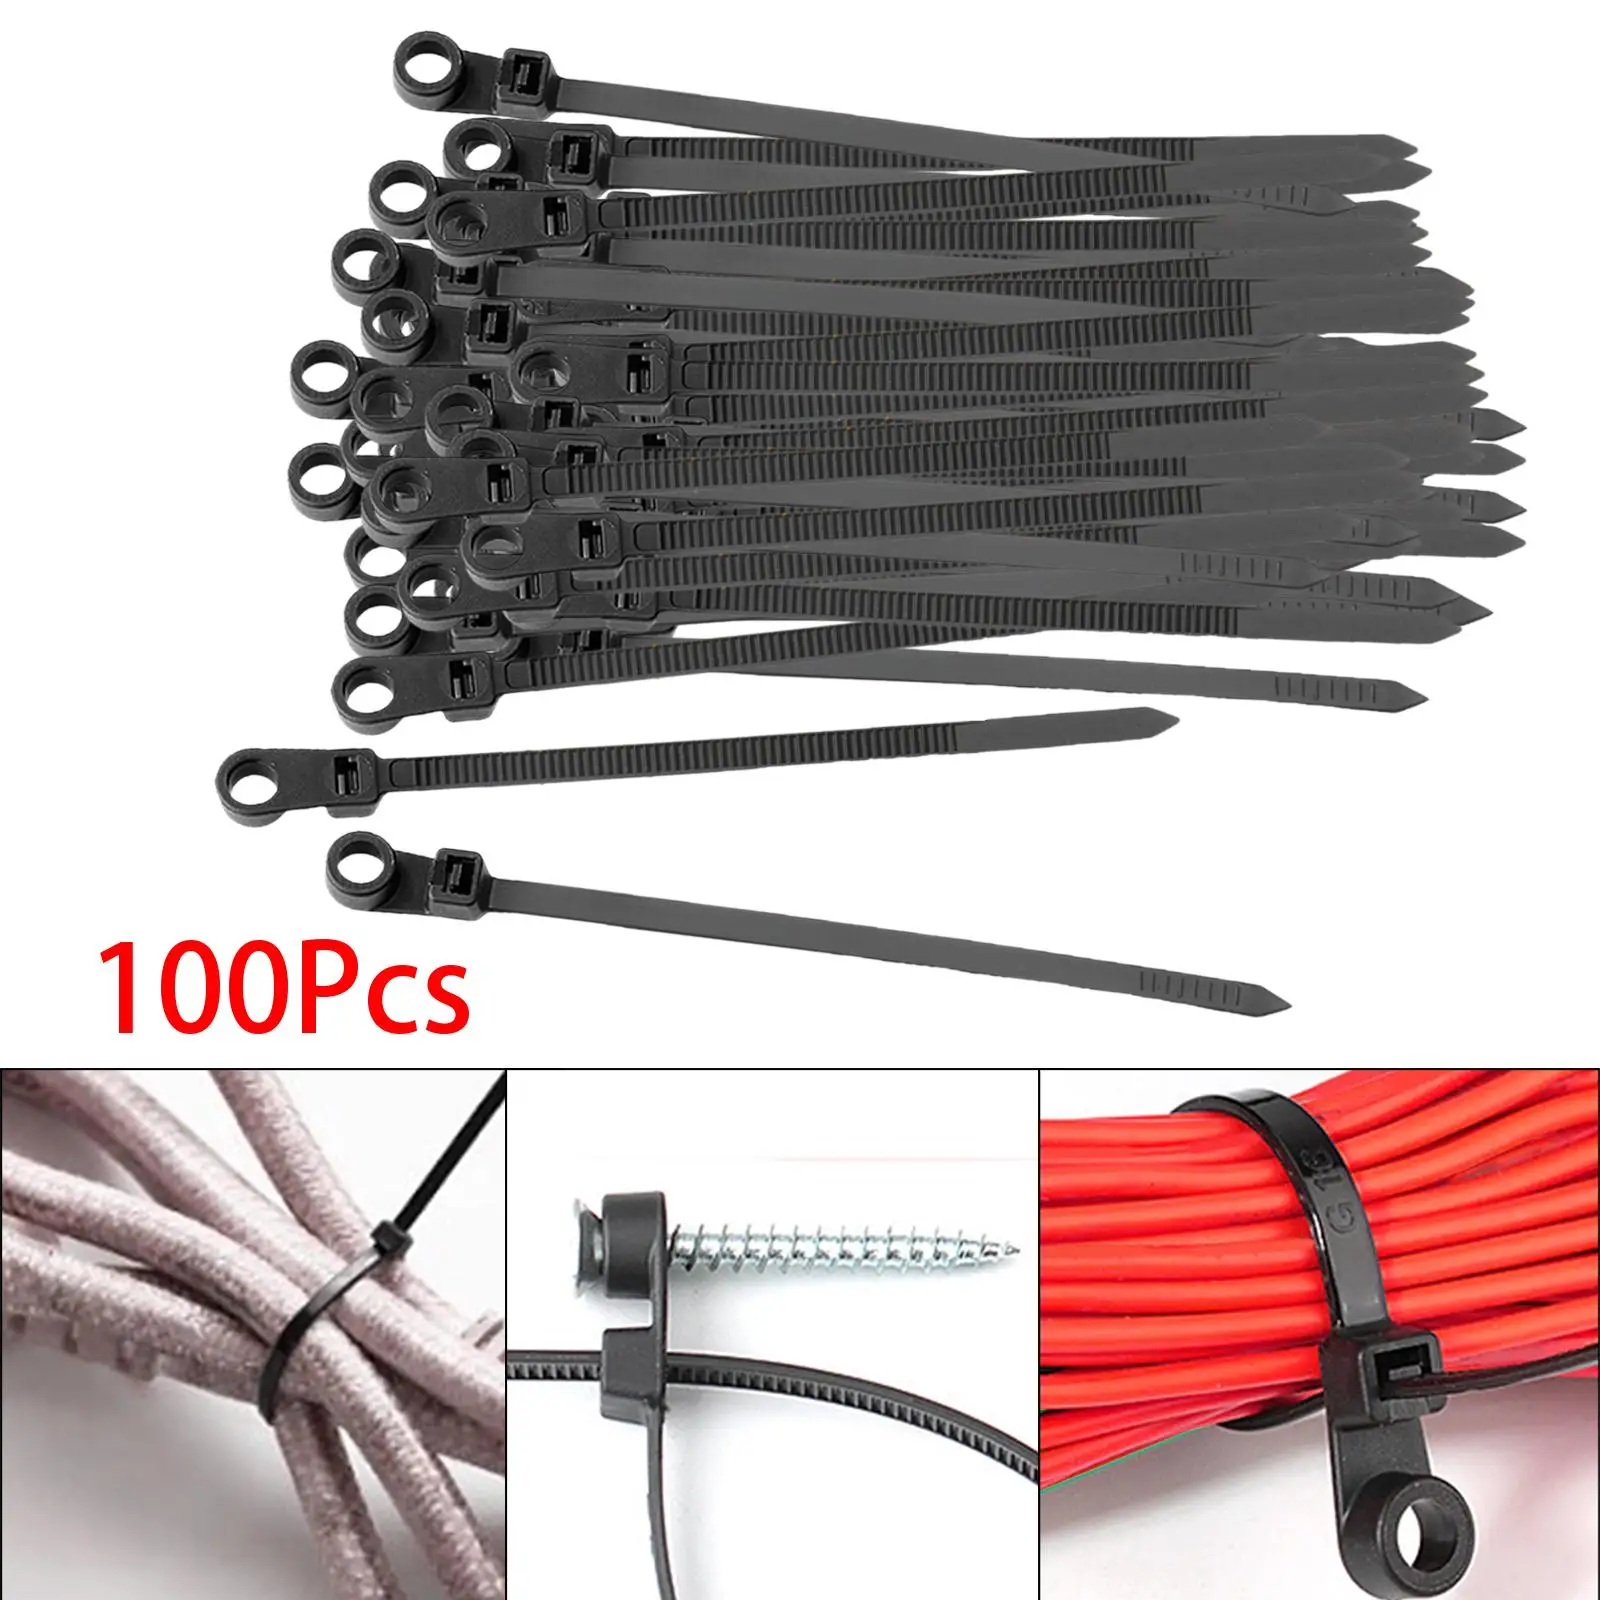 100 Pieces Nylon Cable Ties with Fixed Holes Professional Zip Wire Ties for Home Garden Trellis Workshop Indoor Outdoor Garage